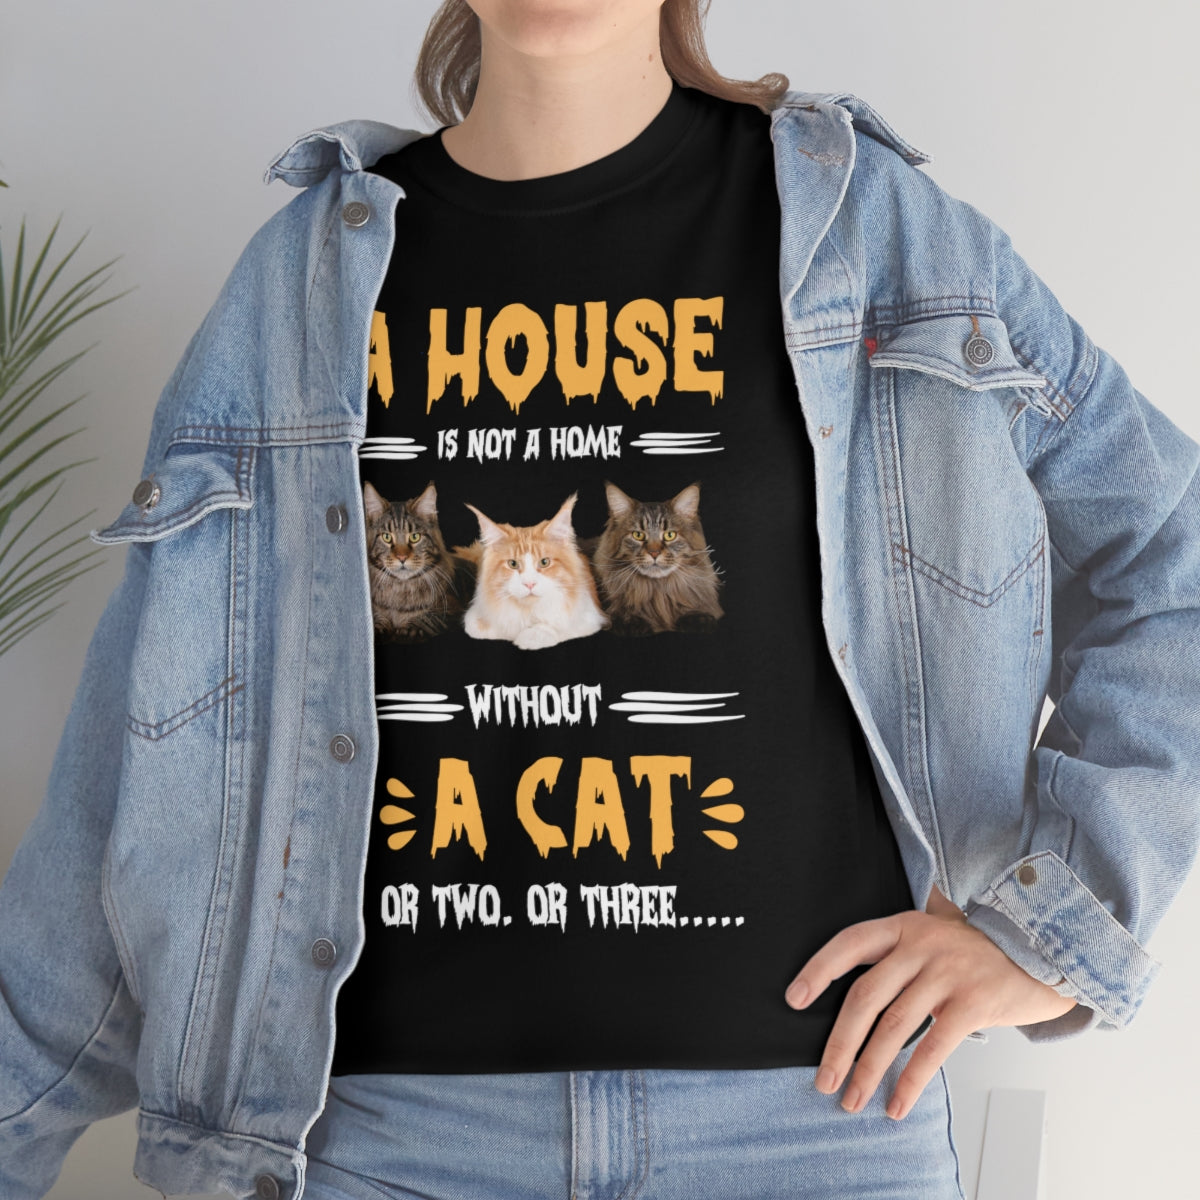 Cat shirt for women 